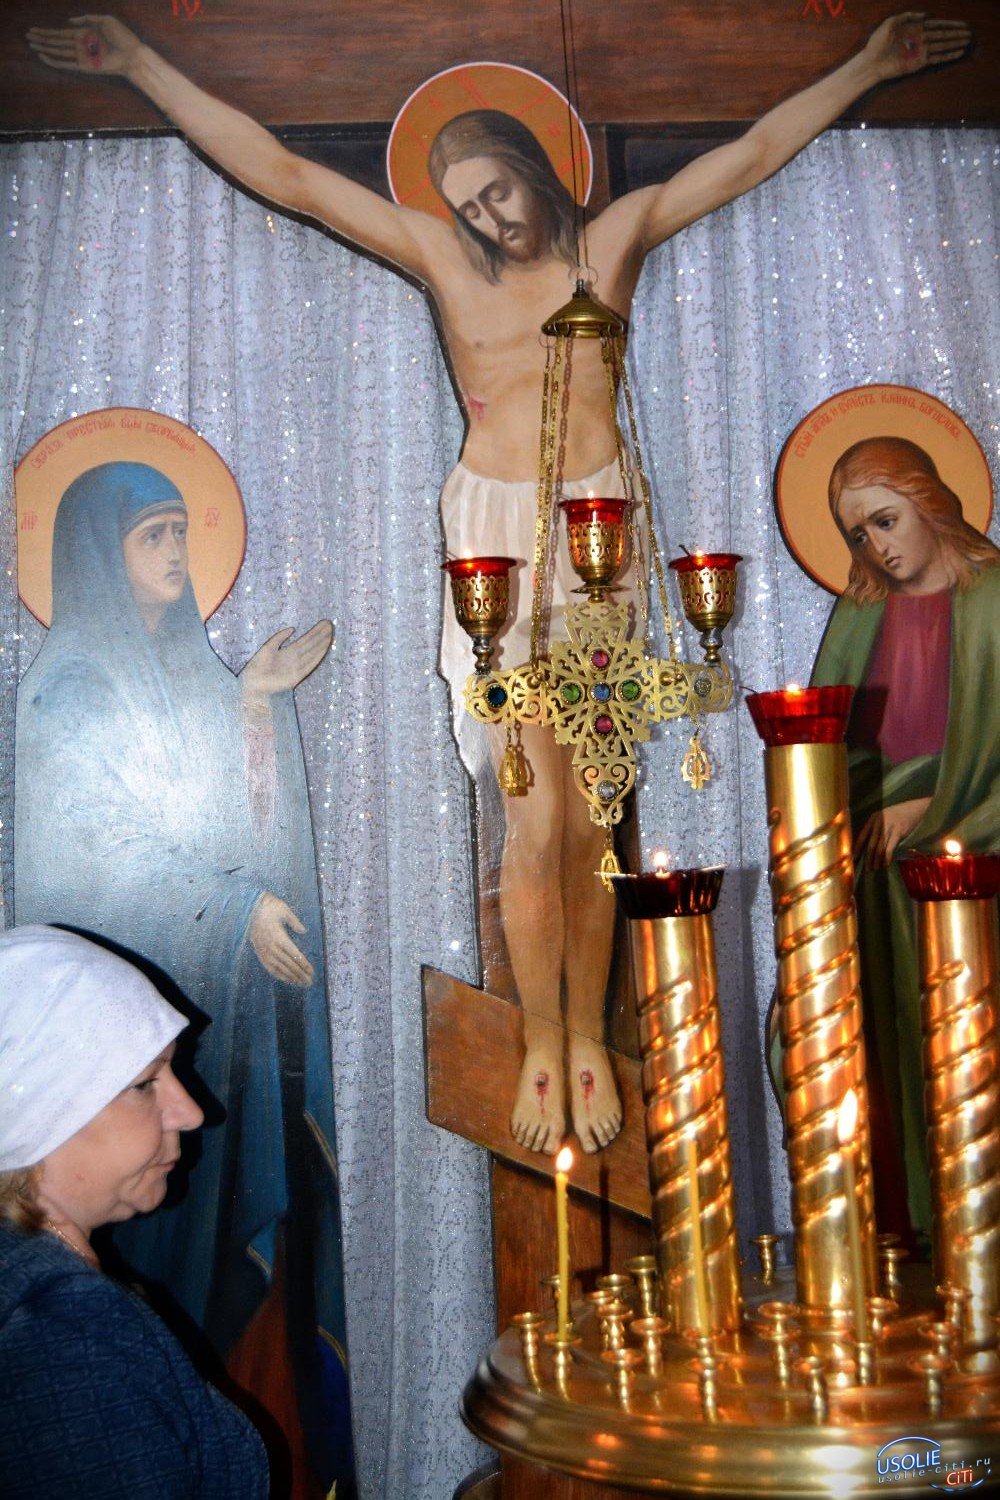 Сегодня нельзя плохо о ком-то думать: В Усольском районе православные верующие встречают Вознесение Господне